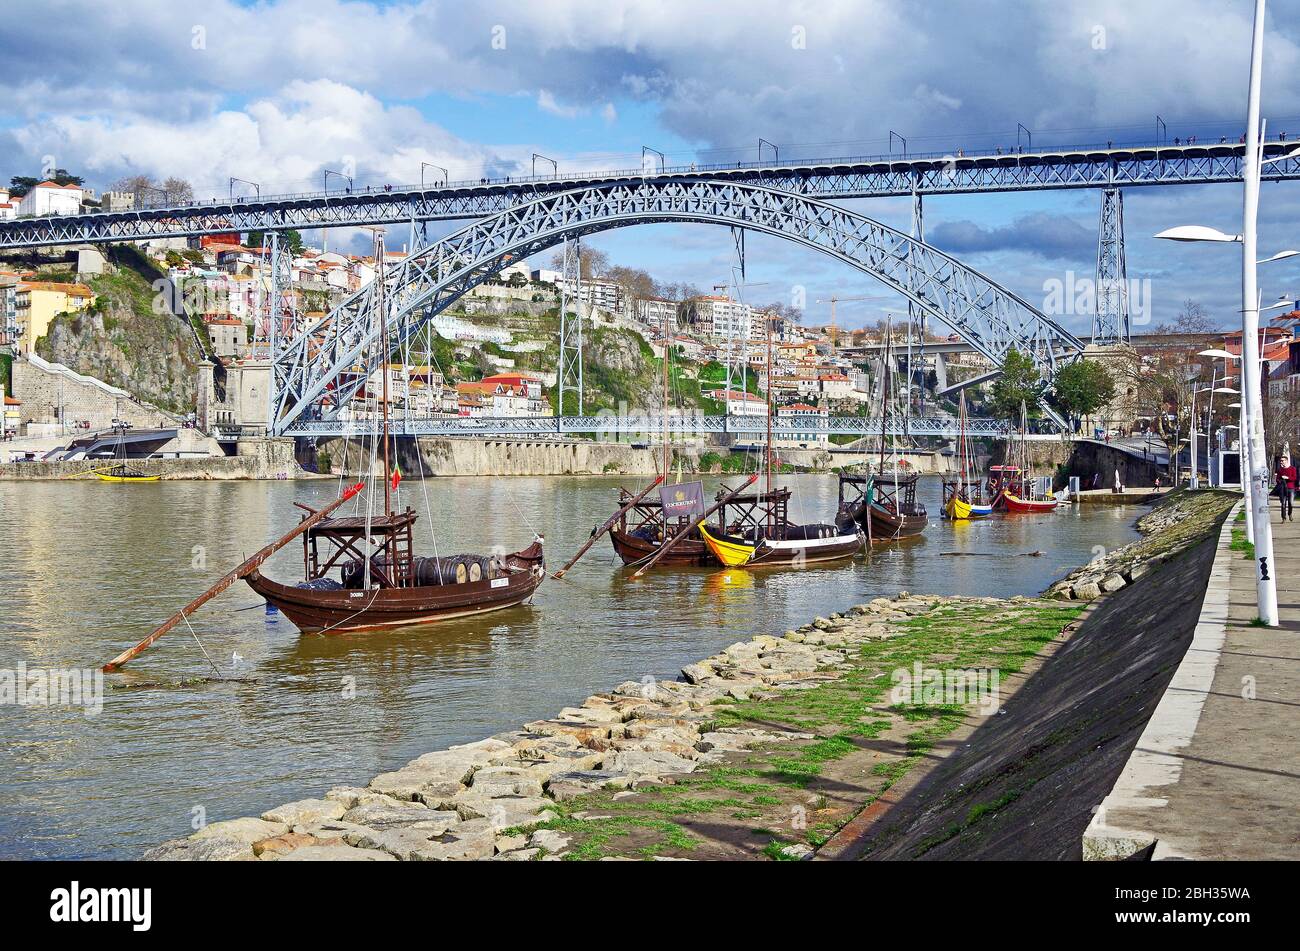 L'arche de métal à double pont historique Ponte Luis I enjambant la vallée de granit du fleuve Douro à Porto, Portugal, avec des cargos historiques Banque D'Images